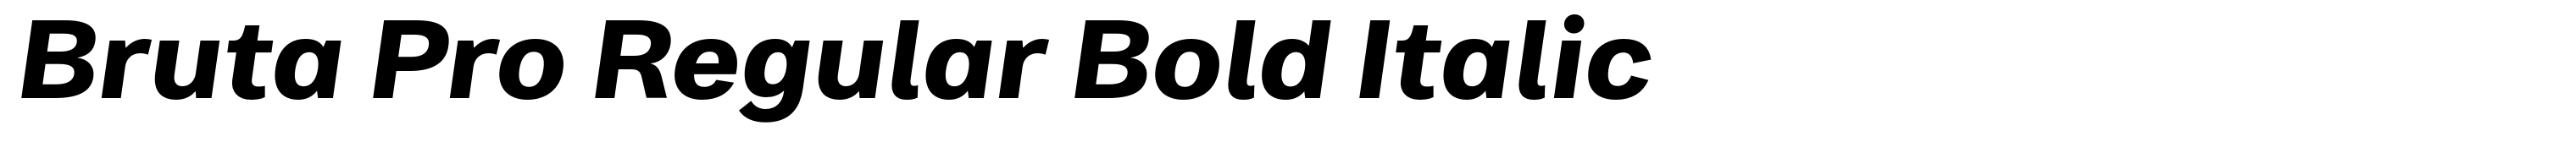 Bruta Pro Regular Bold Italic